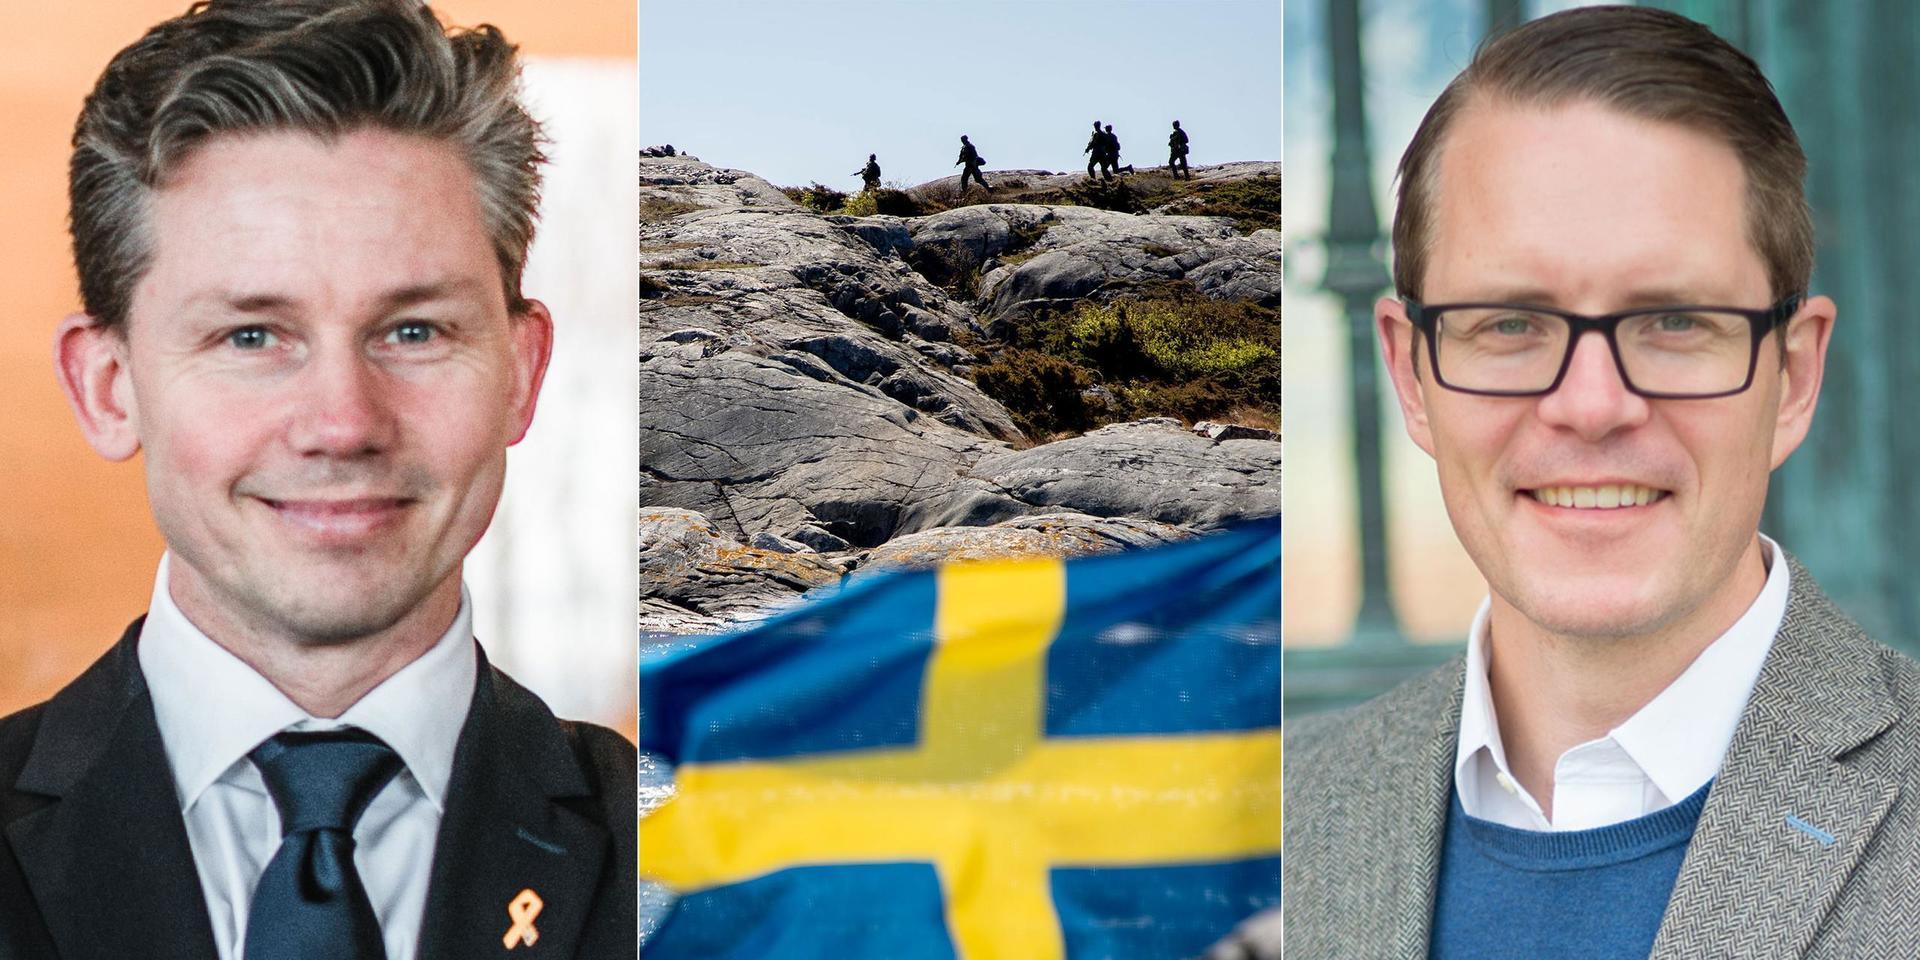 Sverige behöver en modern krisberedskap som kan hantera en bredd av olika kriser, skriver debattörerna.